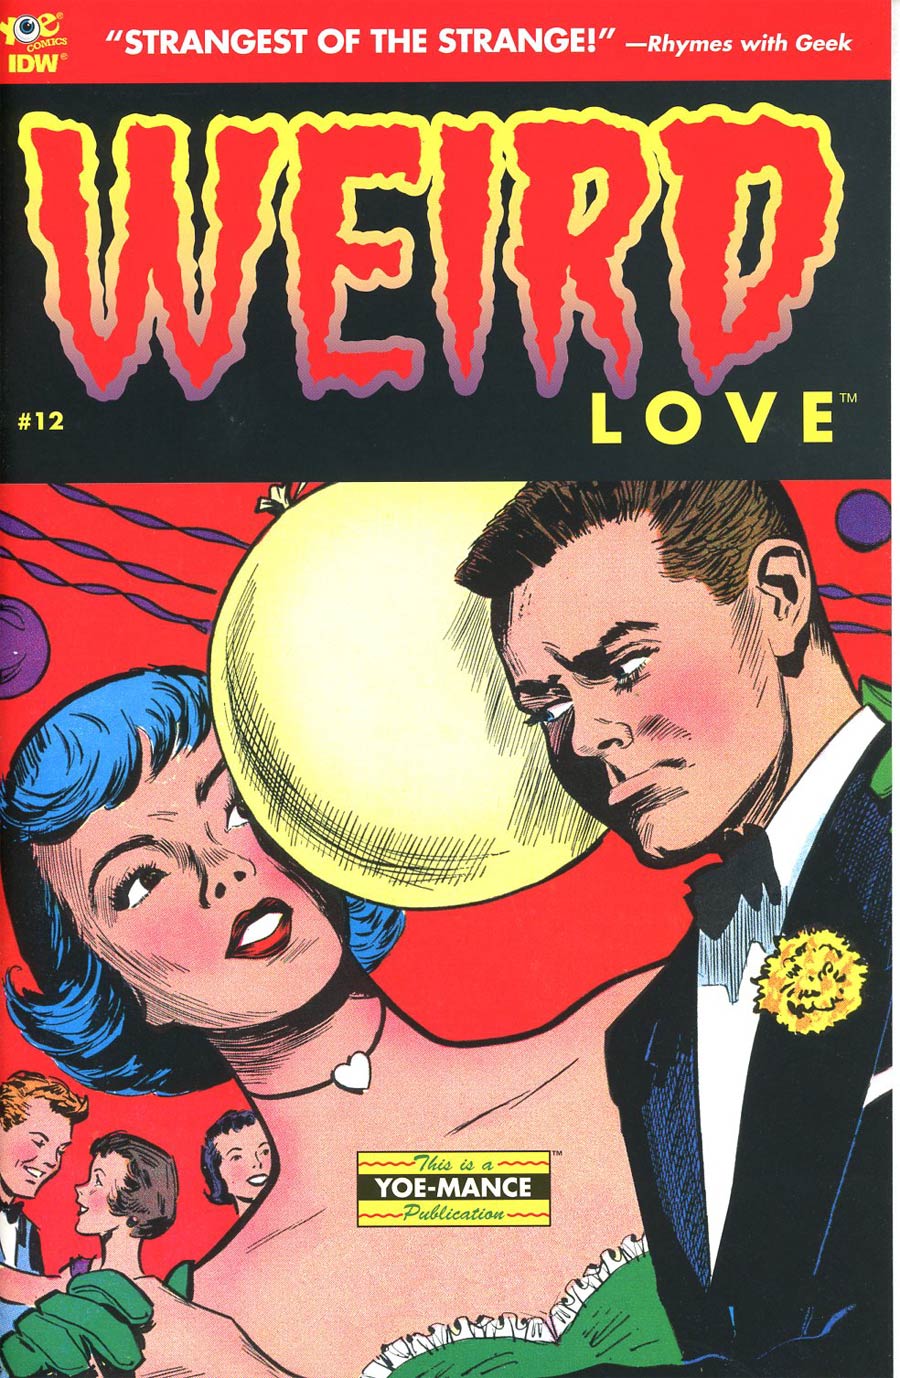 Weird Love #12